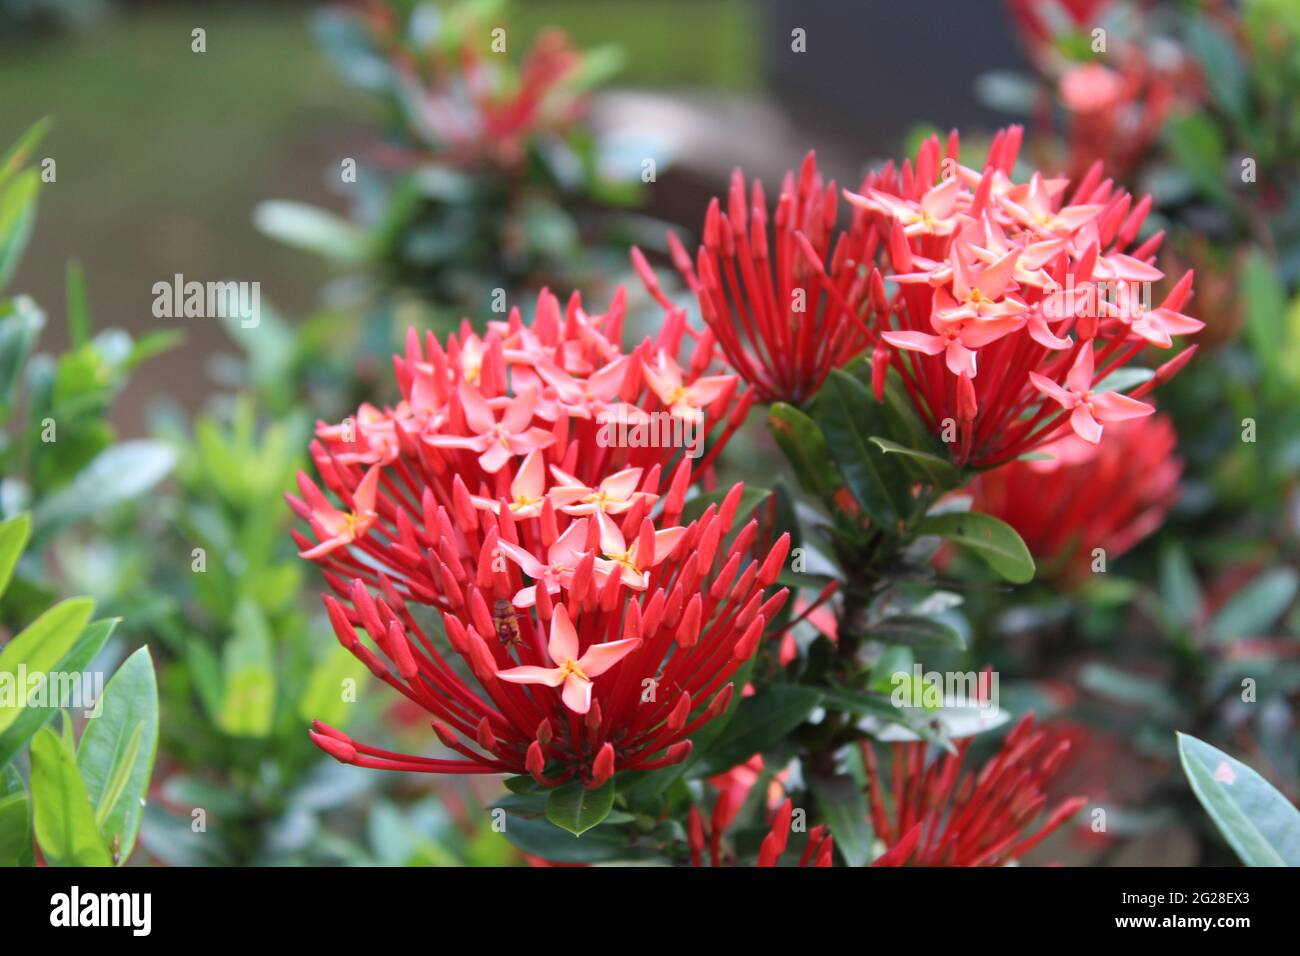 Rouge vif petit bouquet de fleurs : flamme des bois (Rubiaceae) Ixora coccinea L. -- géranium de la jungle, fleur d'aiguille, géranium de la jungle Banque D'Images